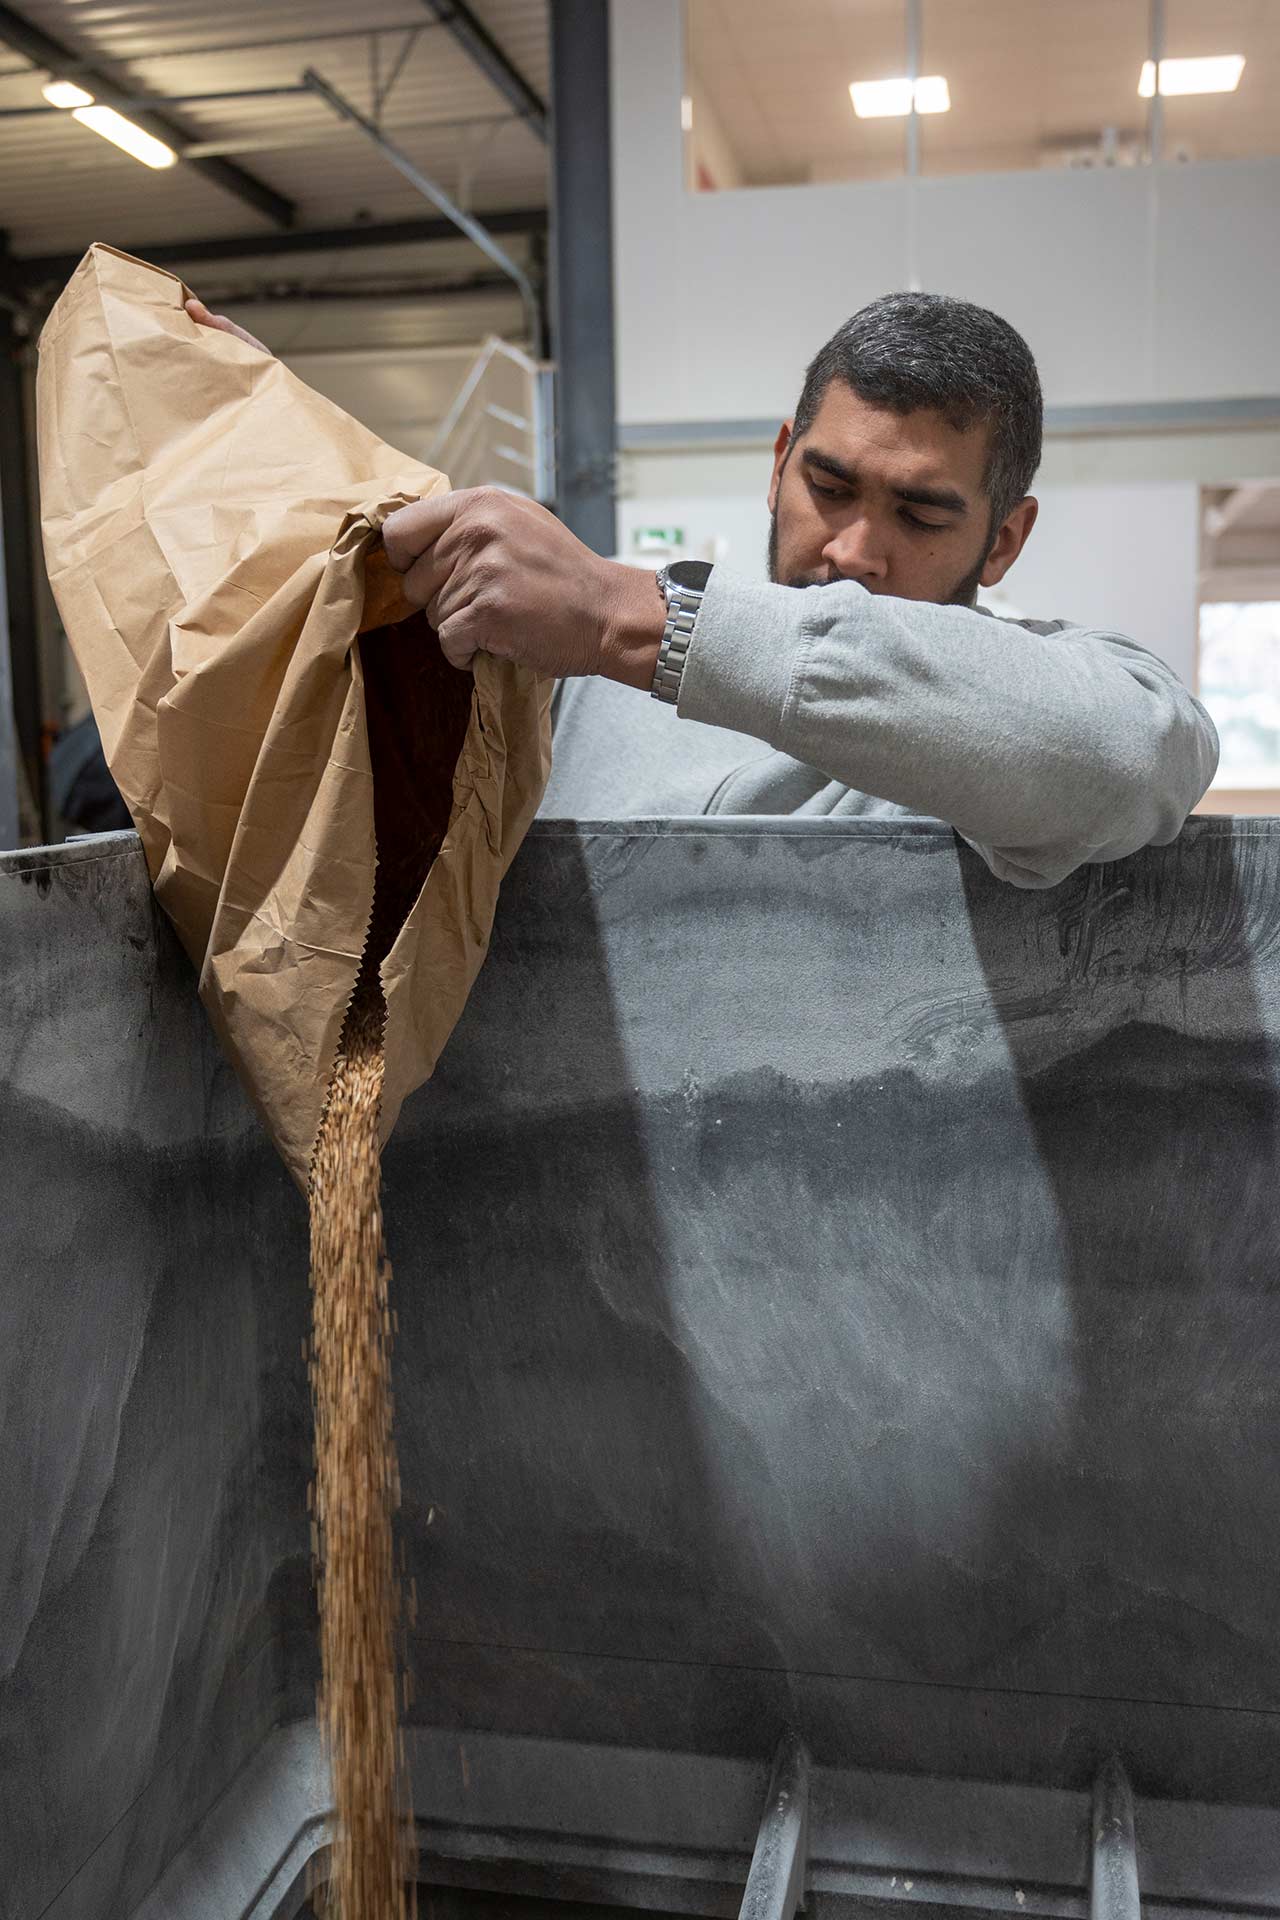 Grains de blé versés dans un moulin à farine (moulin à projection) par Nicolas, chef d’atelier de la meunerie Gaston Meunier Bio, installée à Pierre-Bénite (métropole de Lyon)